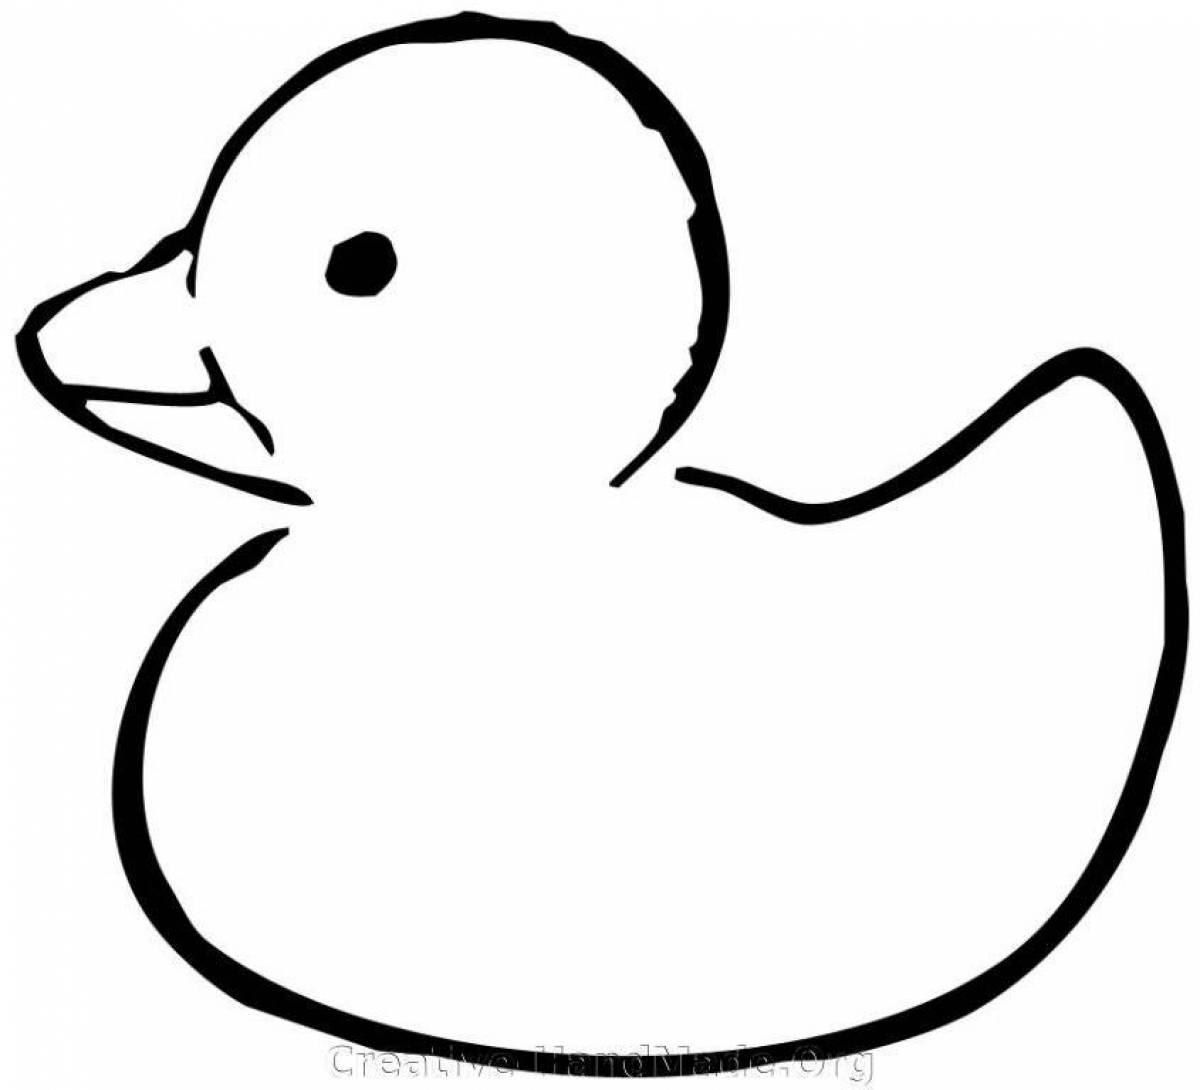 Уникальная раскраска дымковская утка